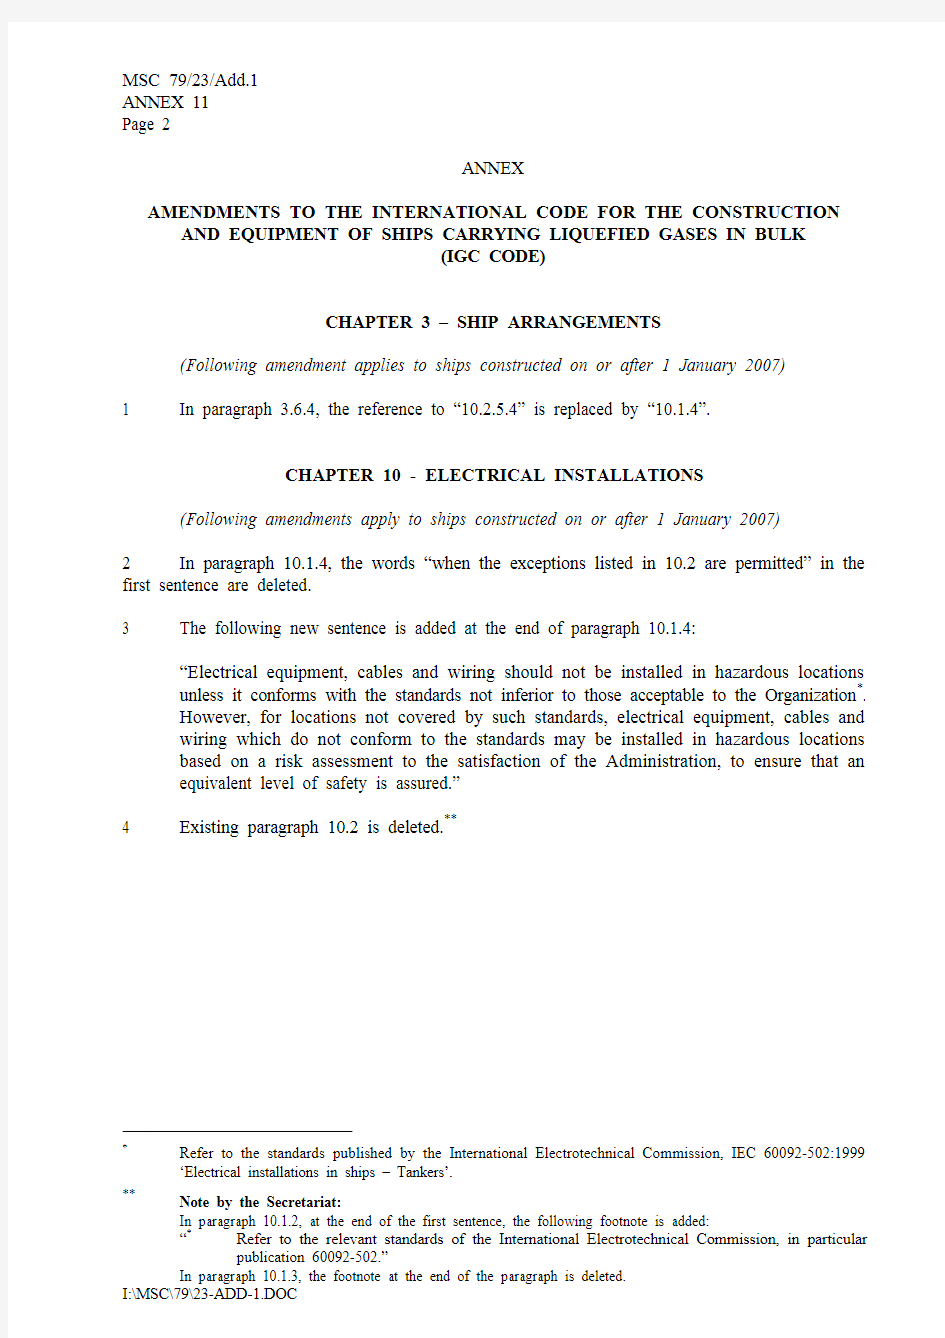 国际散装运输液化气体船舶构造与设备规则(IGC CODE)-2004修正案